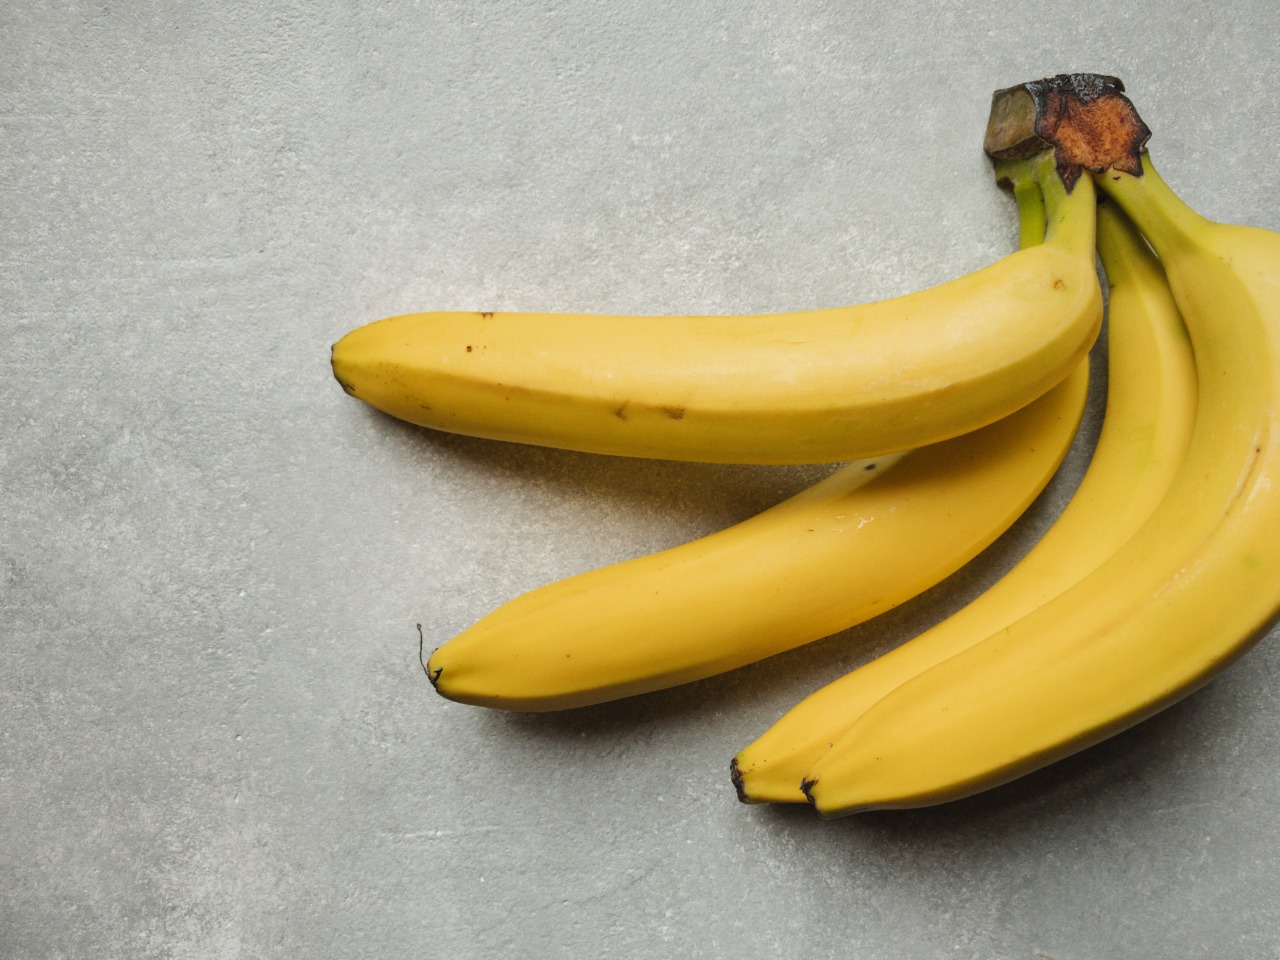 <p>Seperti beri lainnya, pisang terdiri dari tiga lapisan berdaging, yakni : kulit luar, bagian tengah yang empuk dan bagian terdalam yang terdapat biji. (C) Anastasia Eremina on Unsplash</p>
